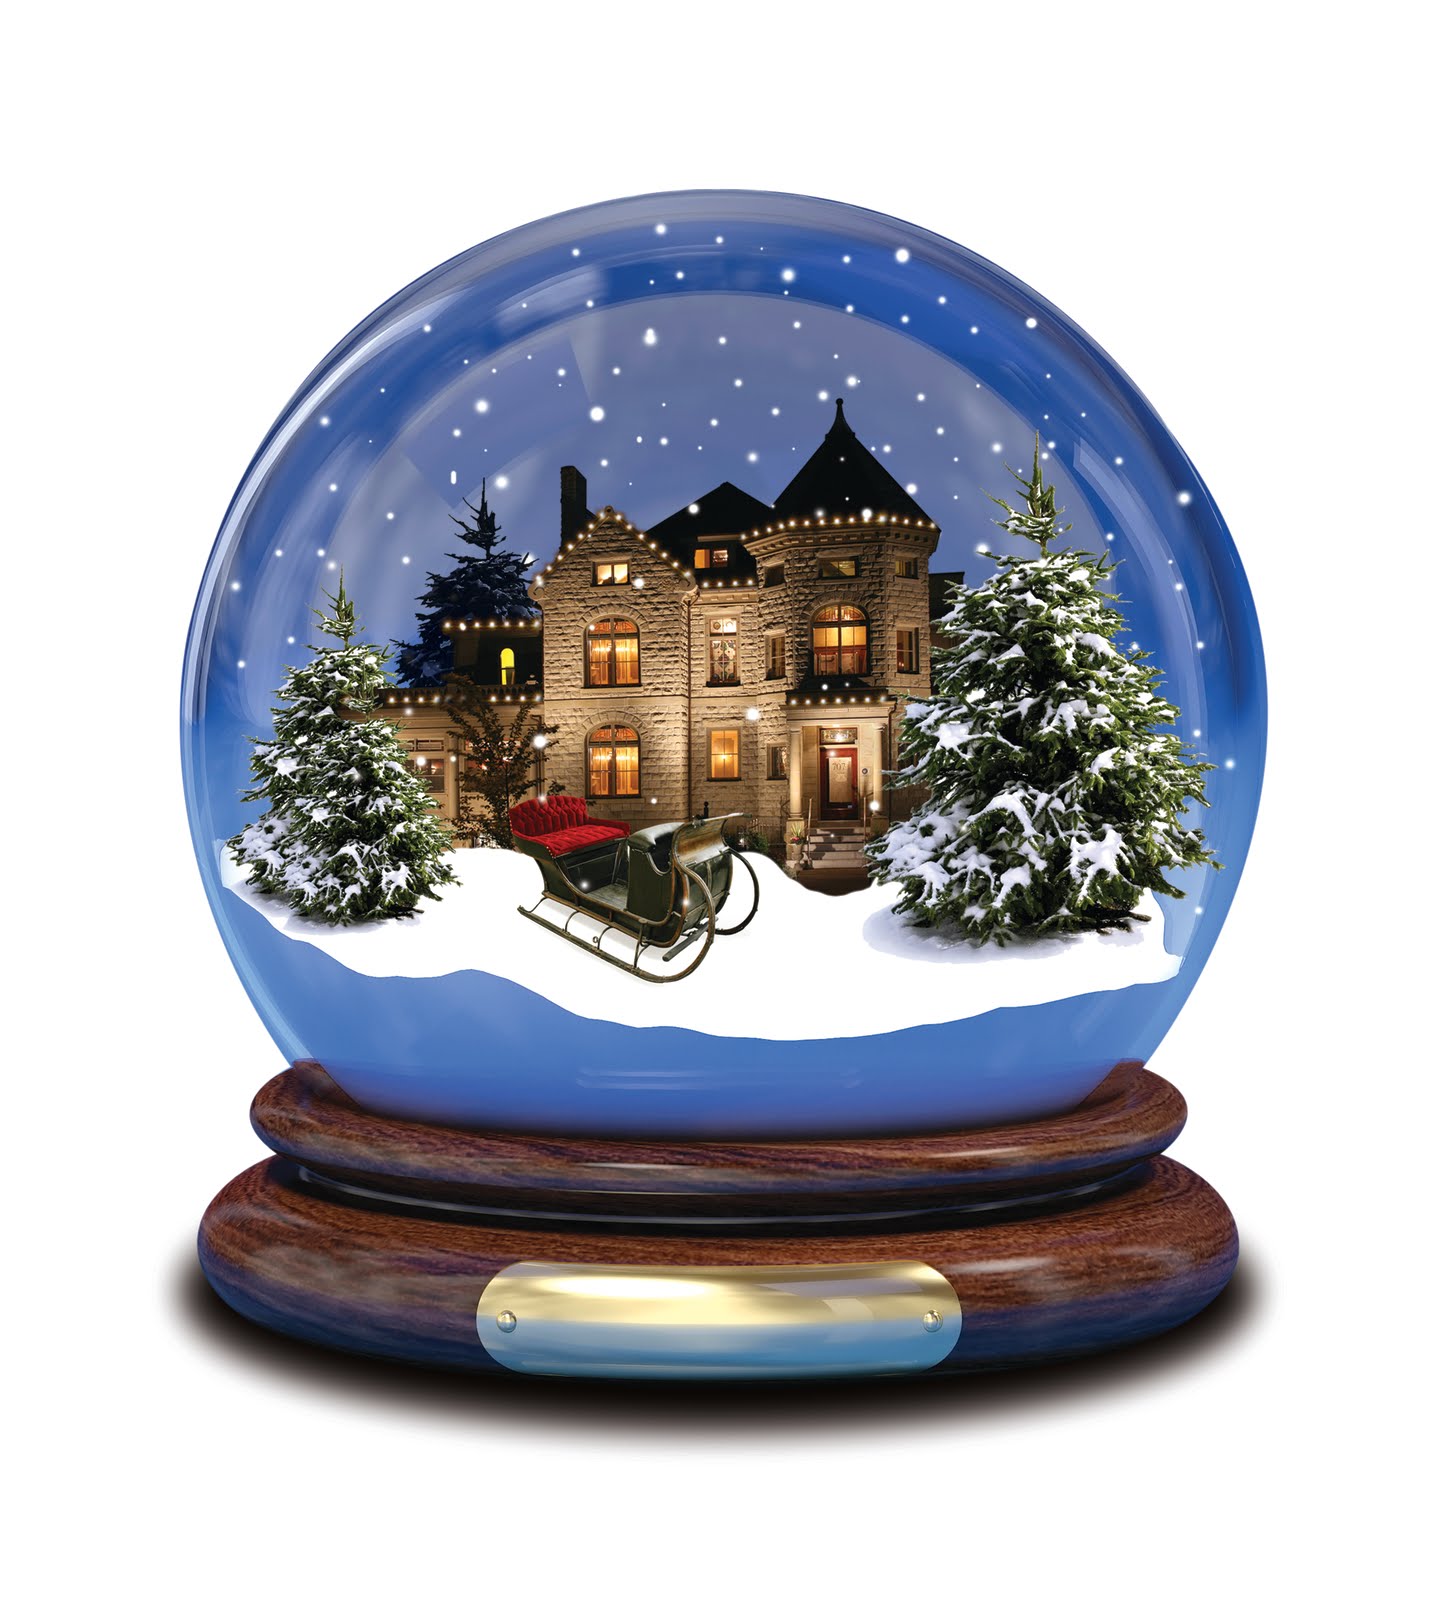 snow globe examples